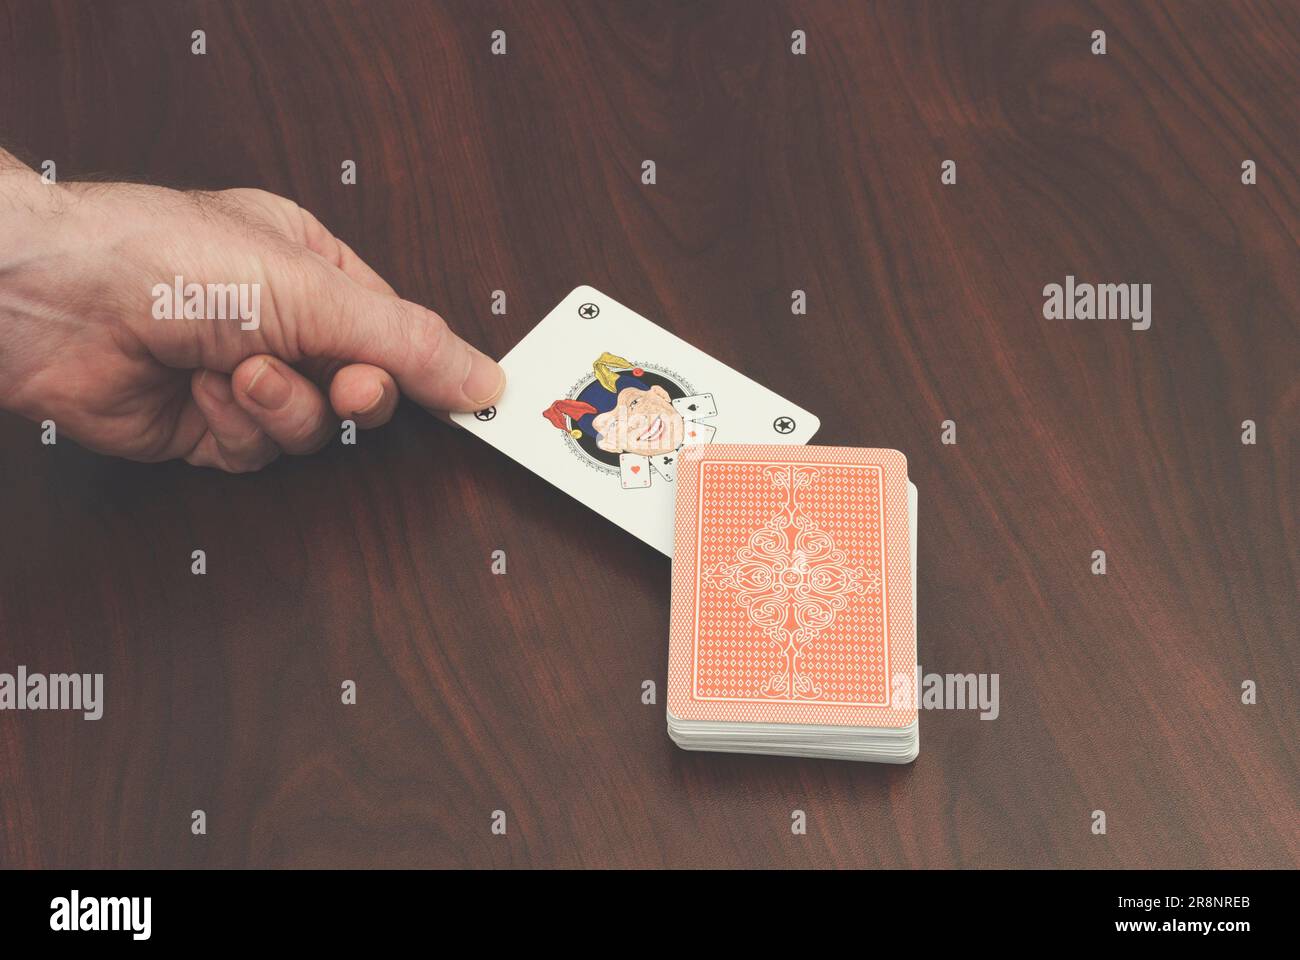 hand picking a joker card Stock Photo